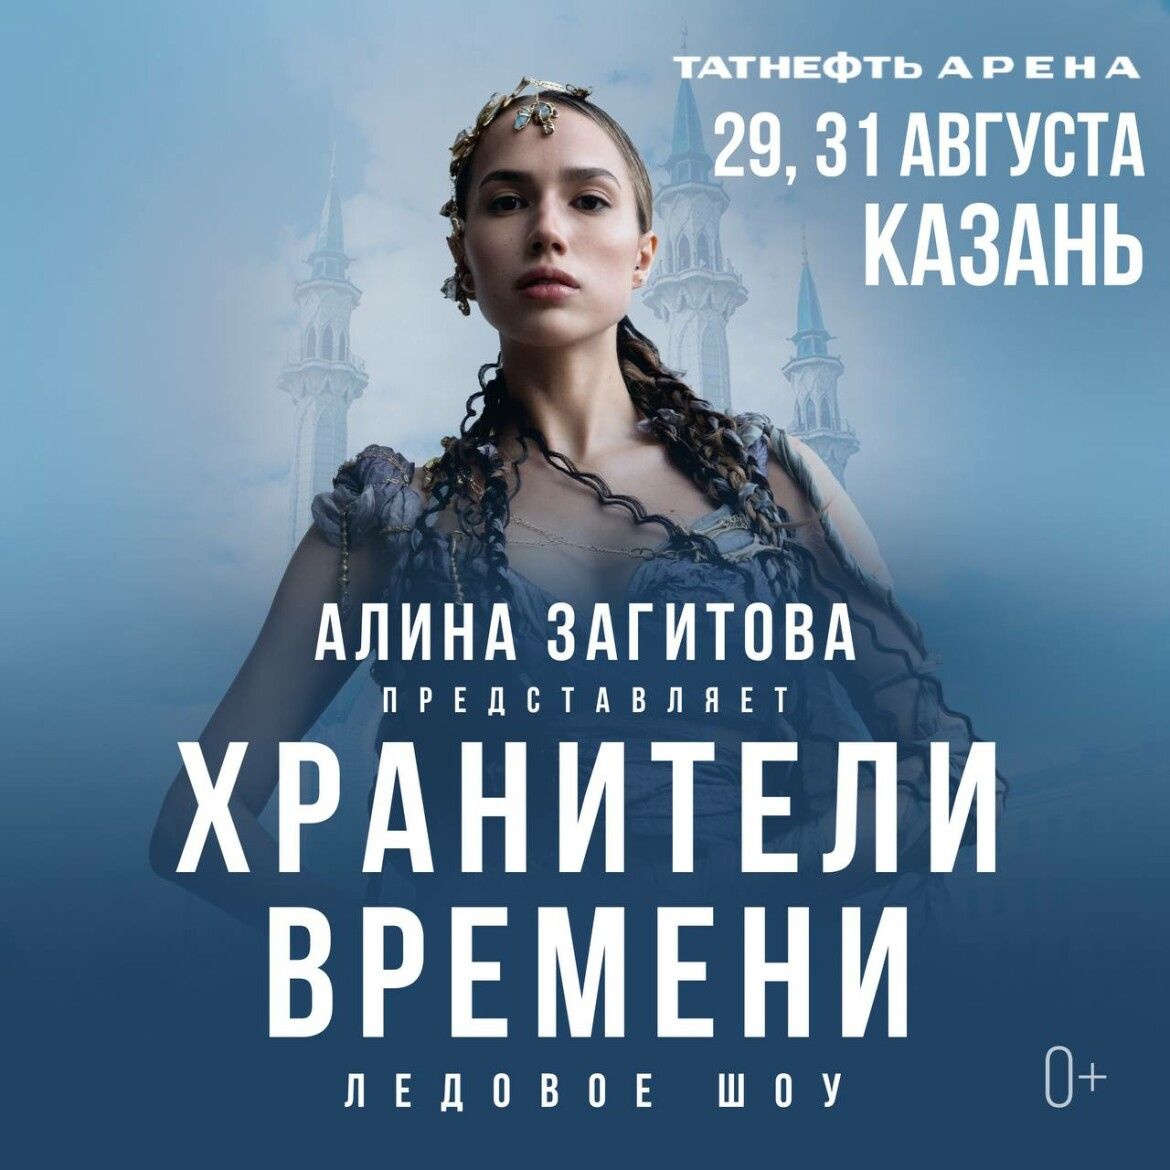 Фигуристка Алина Загитова анонсировала авторское ледовое шоу «Хранители времени»